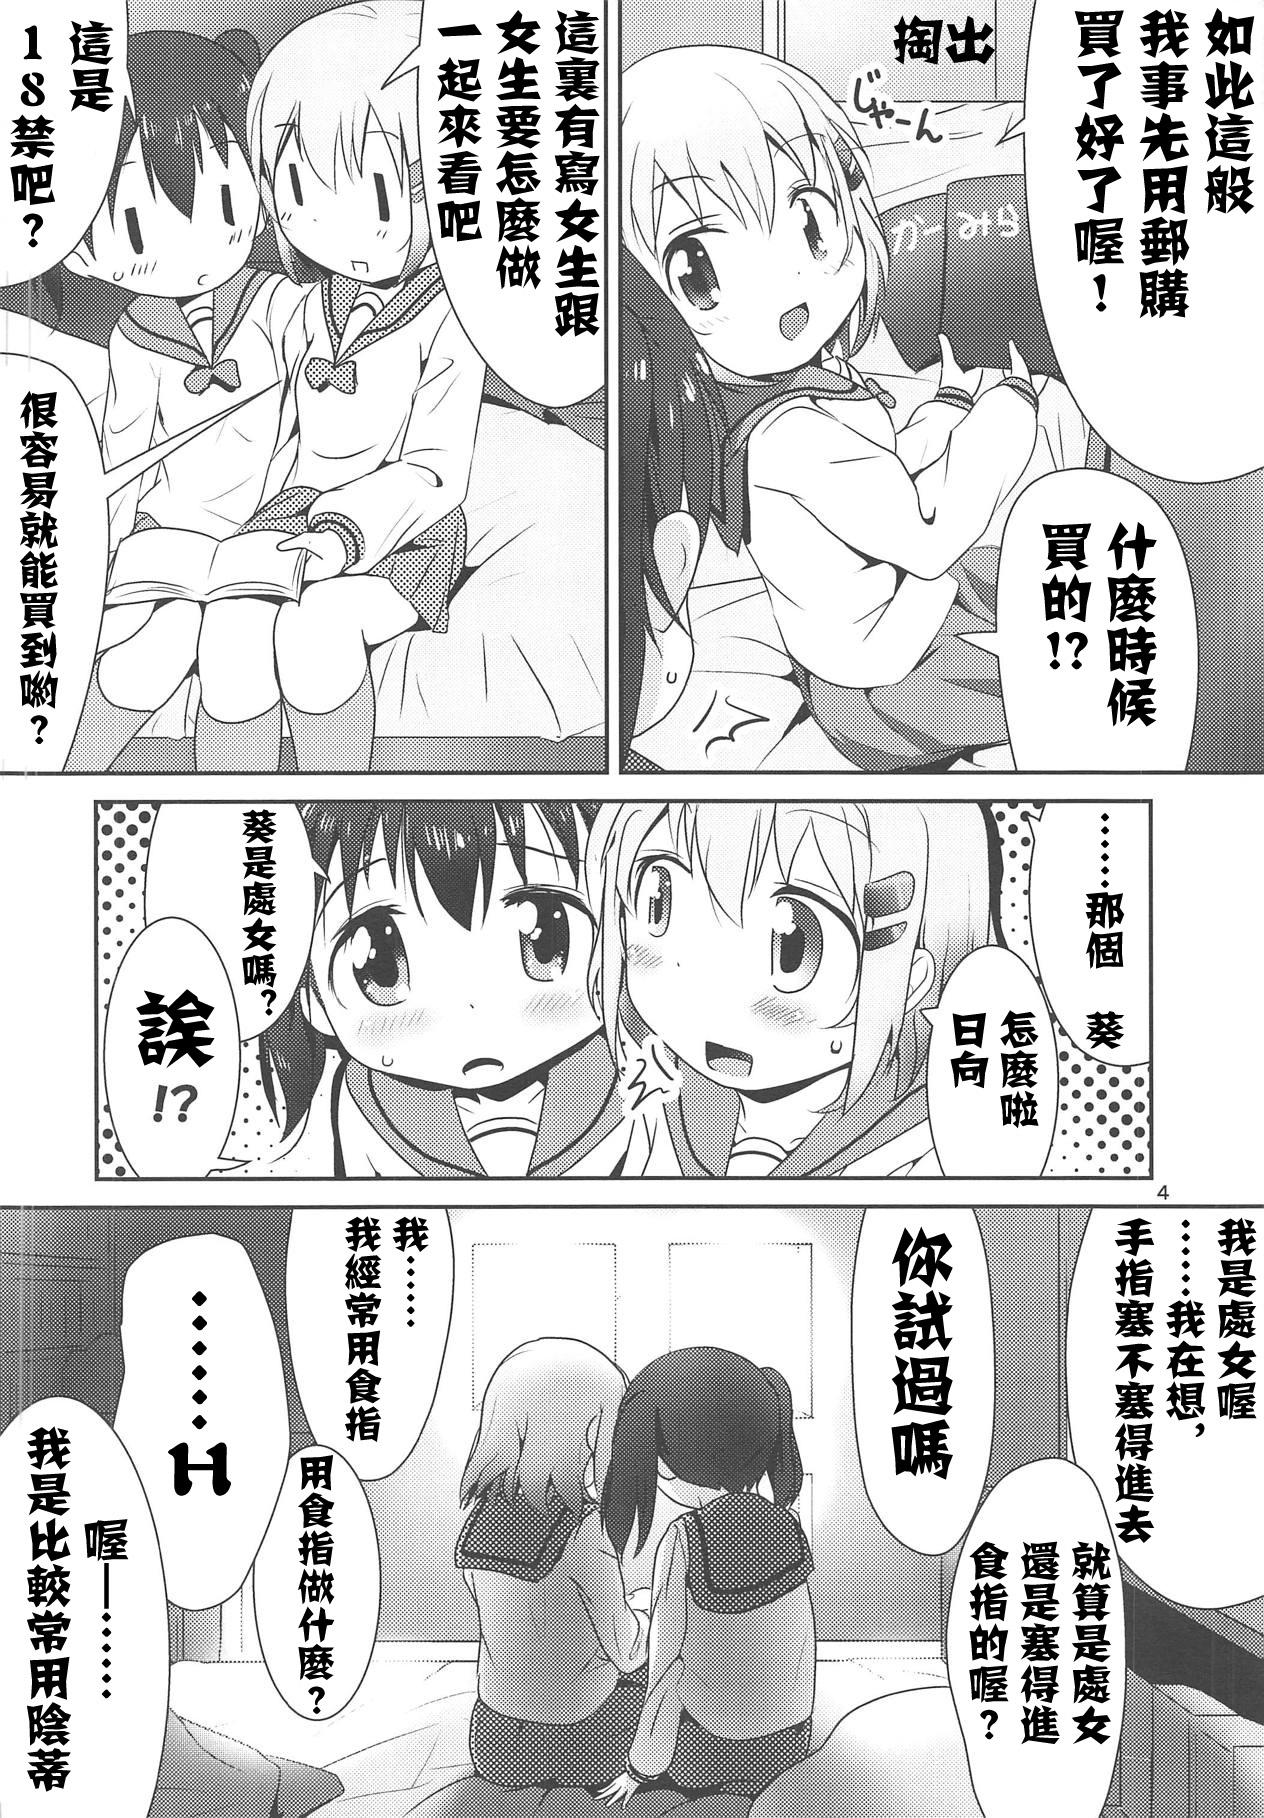 Ball Licking AoHina Yurix - Yama no susume Story - Page 5